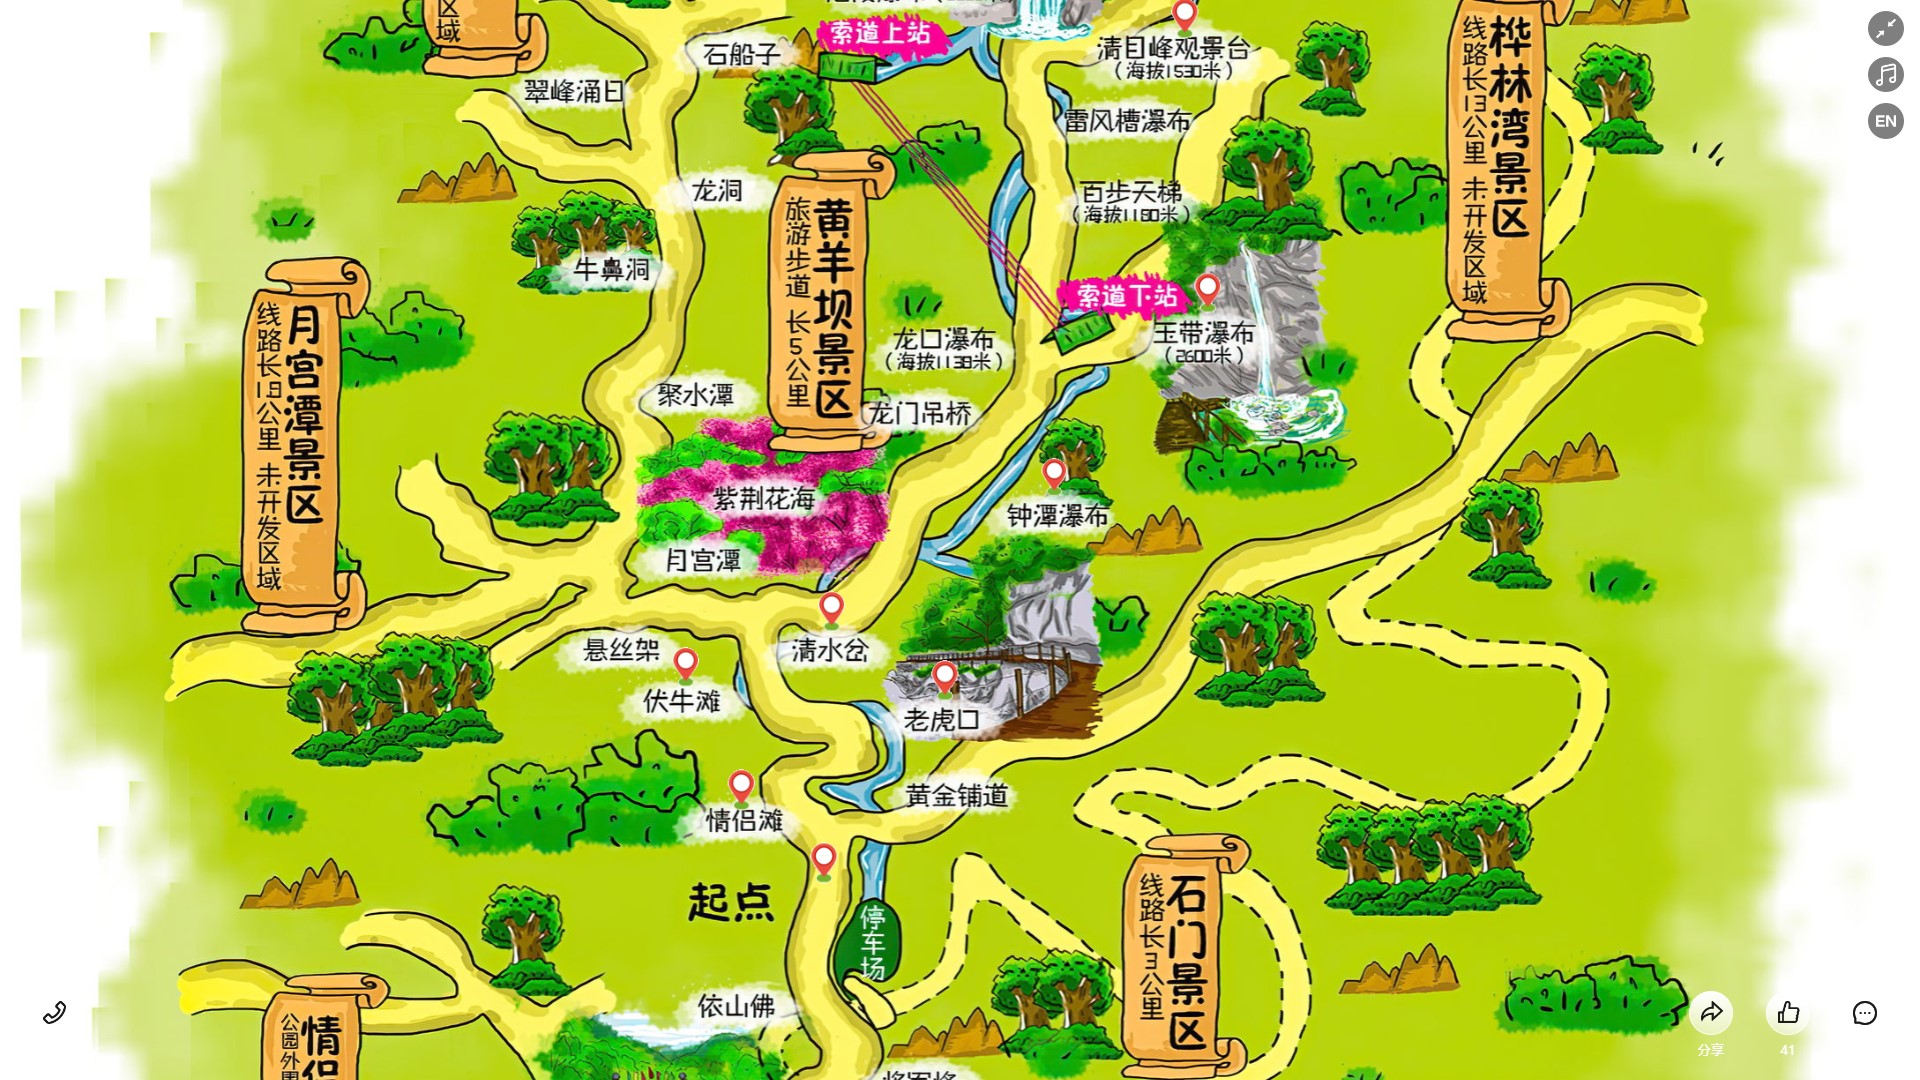 龙湖镇景区导览系统